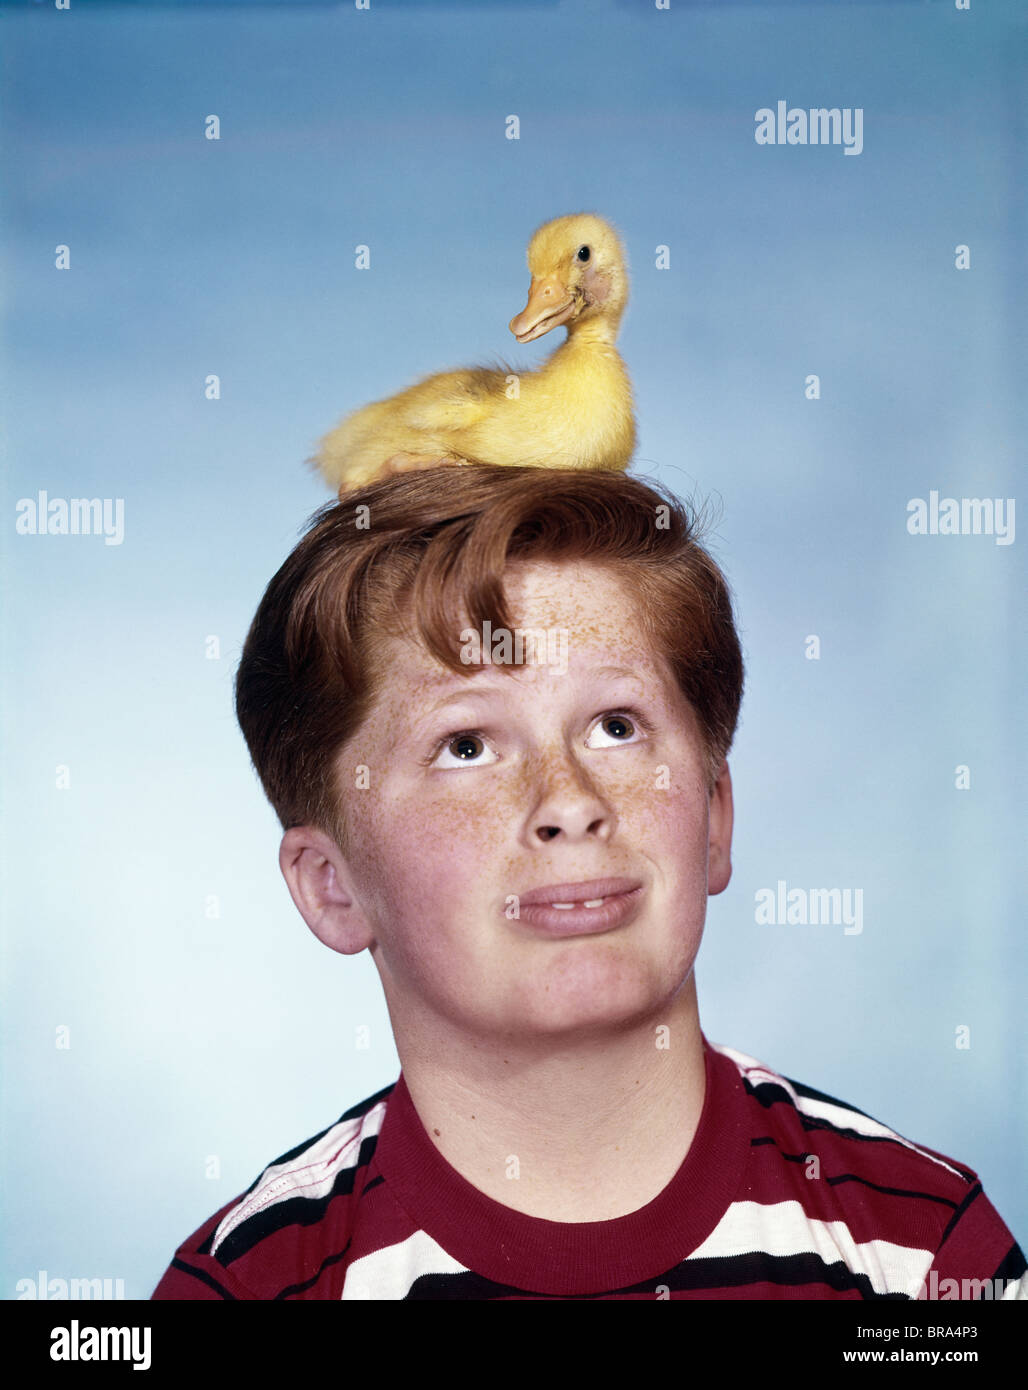 Années 1950 Années 1960 AVEC Bébé garçon petit canard assis sur sa tête l'EXPRESSION SUR LE VISAGE DRÔLE humoristique Banque D'Images